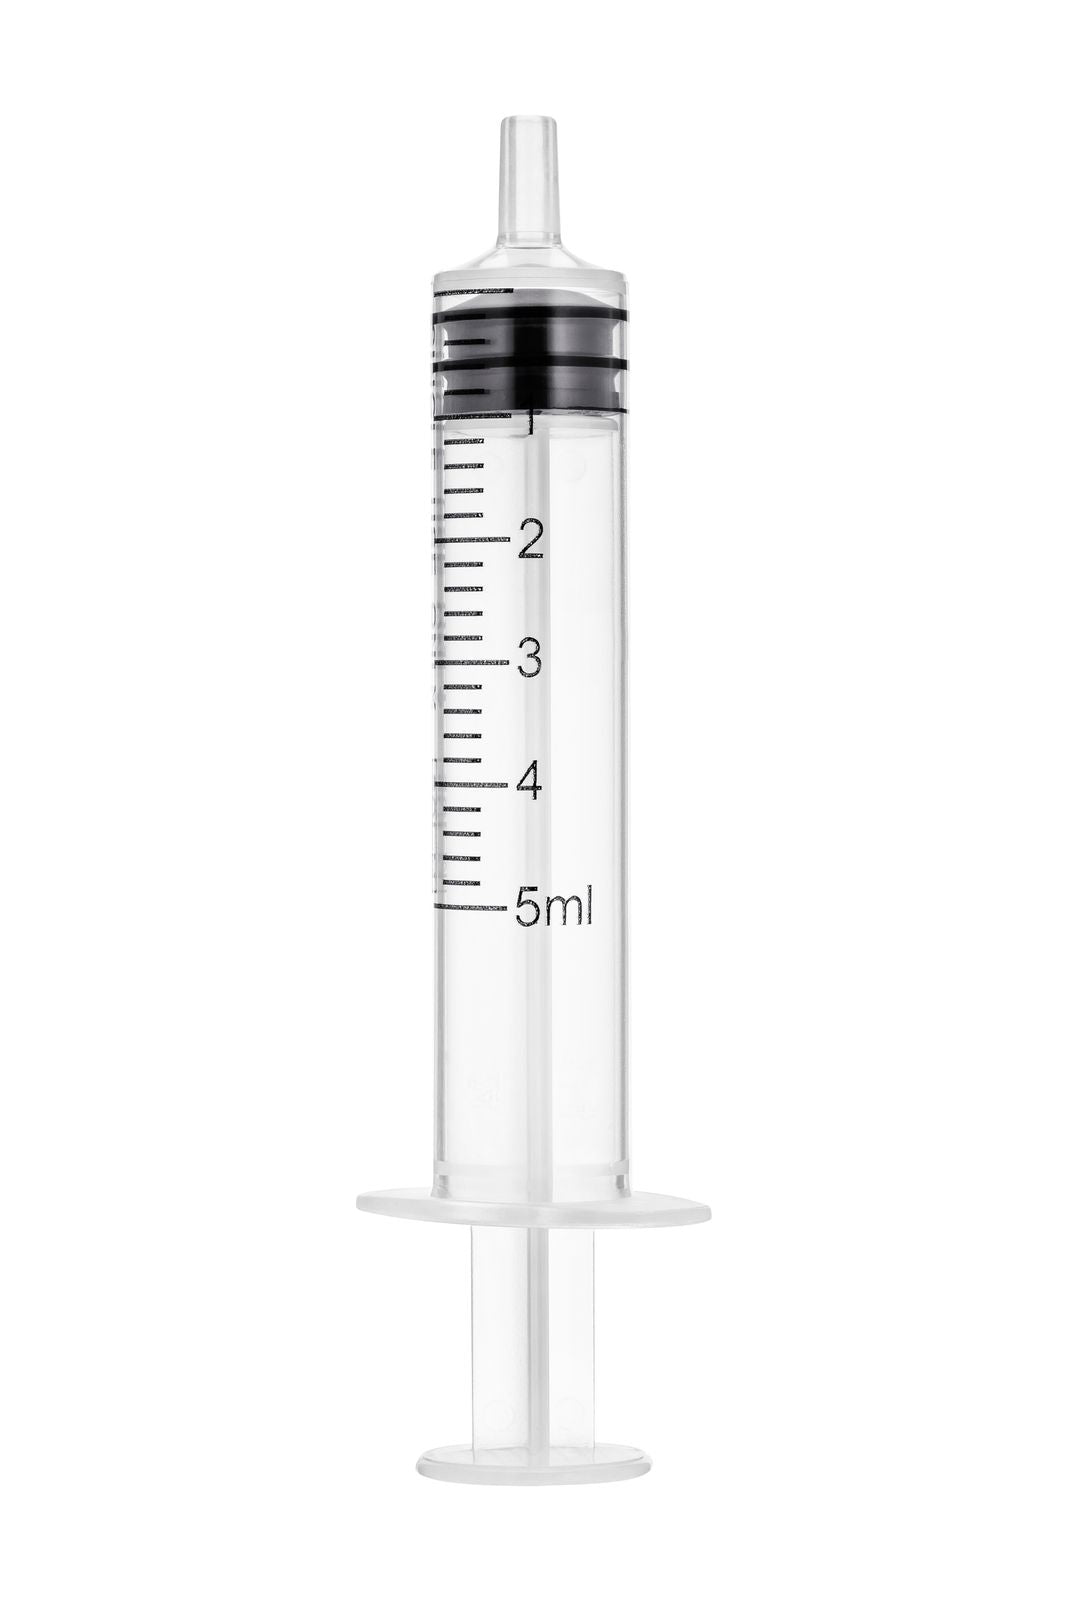 BX/100 - SOL-M 20ml Luer Lock Syringe w/o Needle